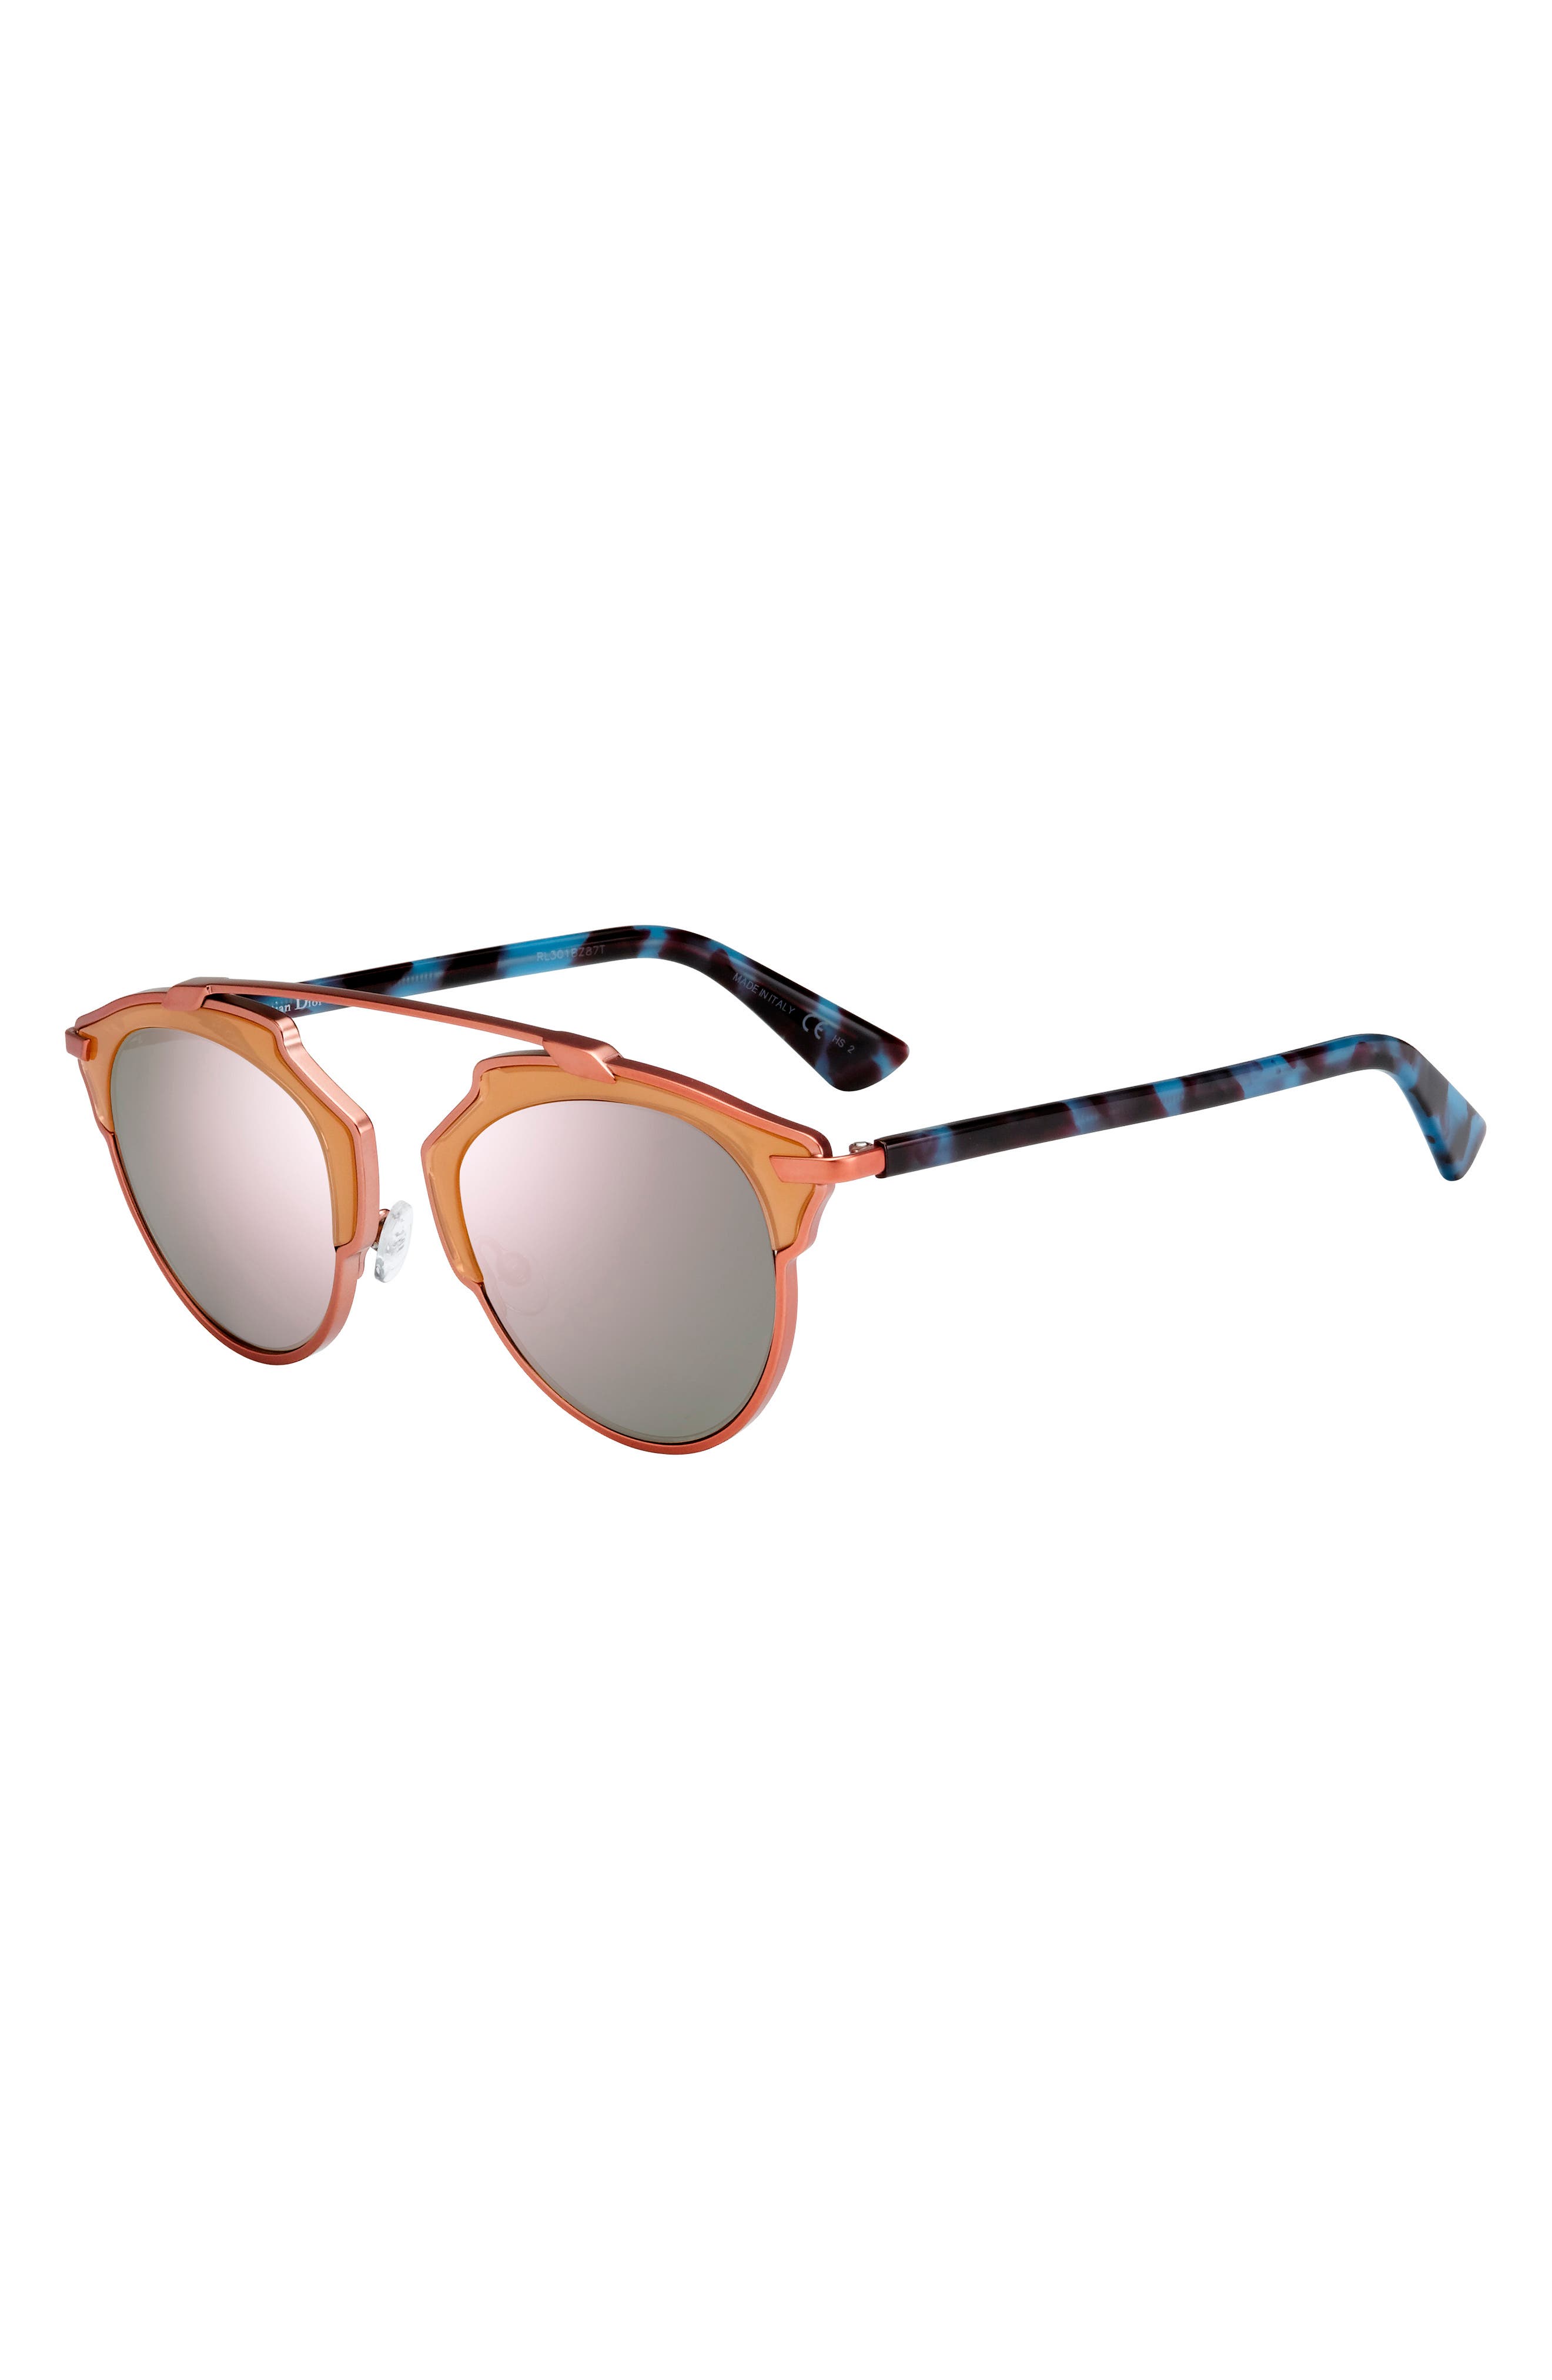 dior brow bar sunglasses